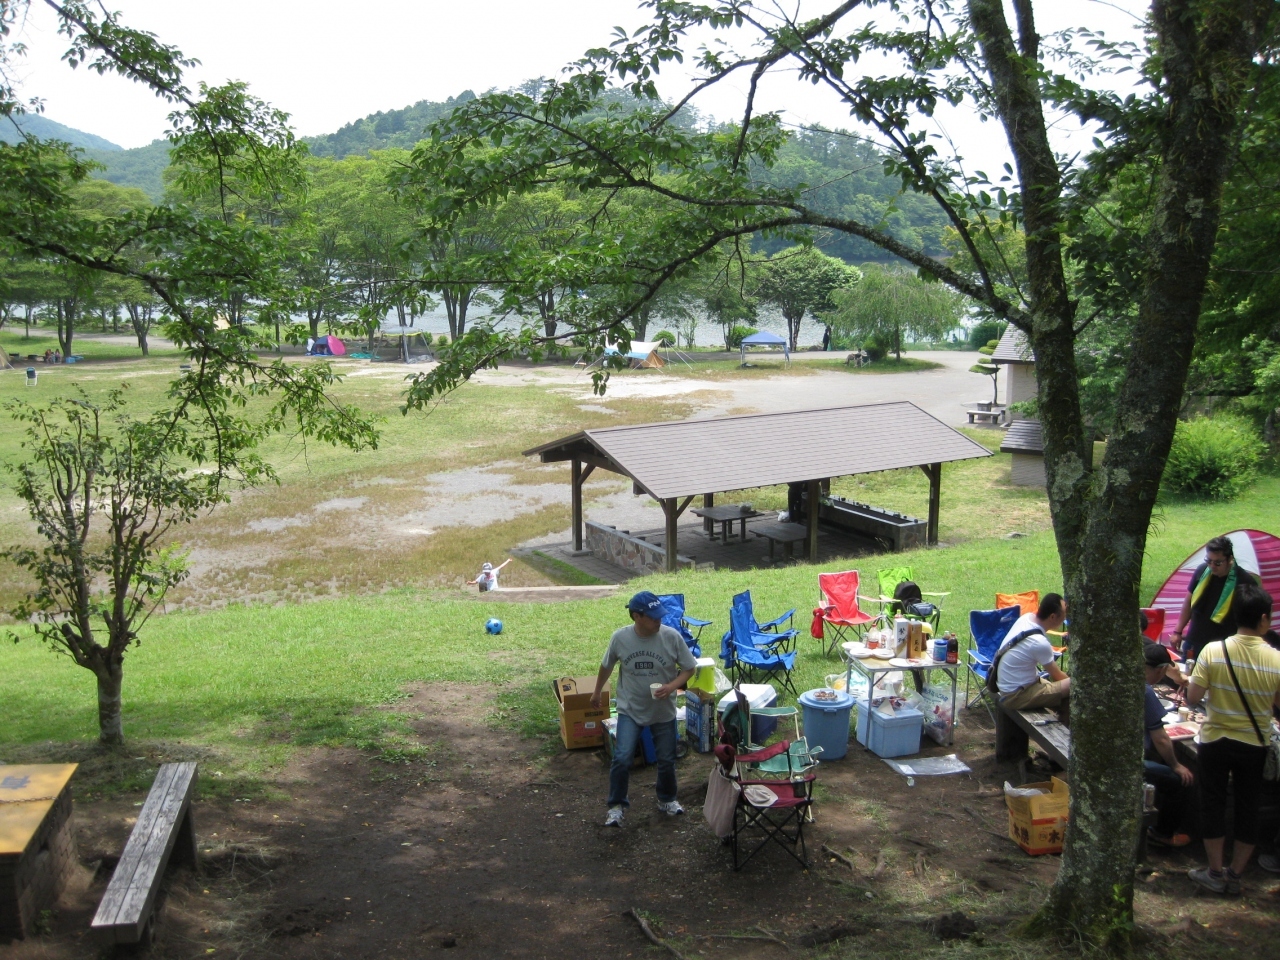 キャンプ場もあり、土曜日ということもあって、いくつかのグループがキャンプをされていました。
